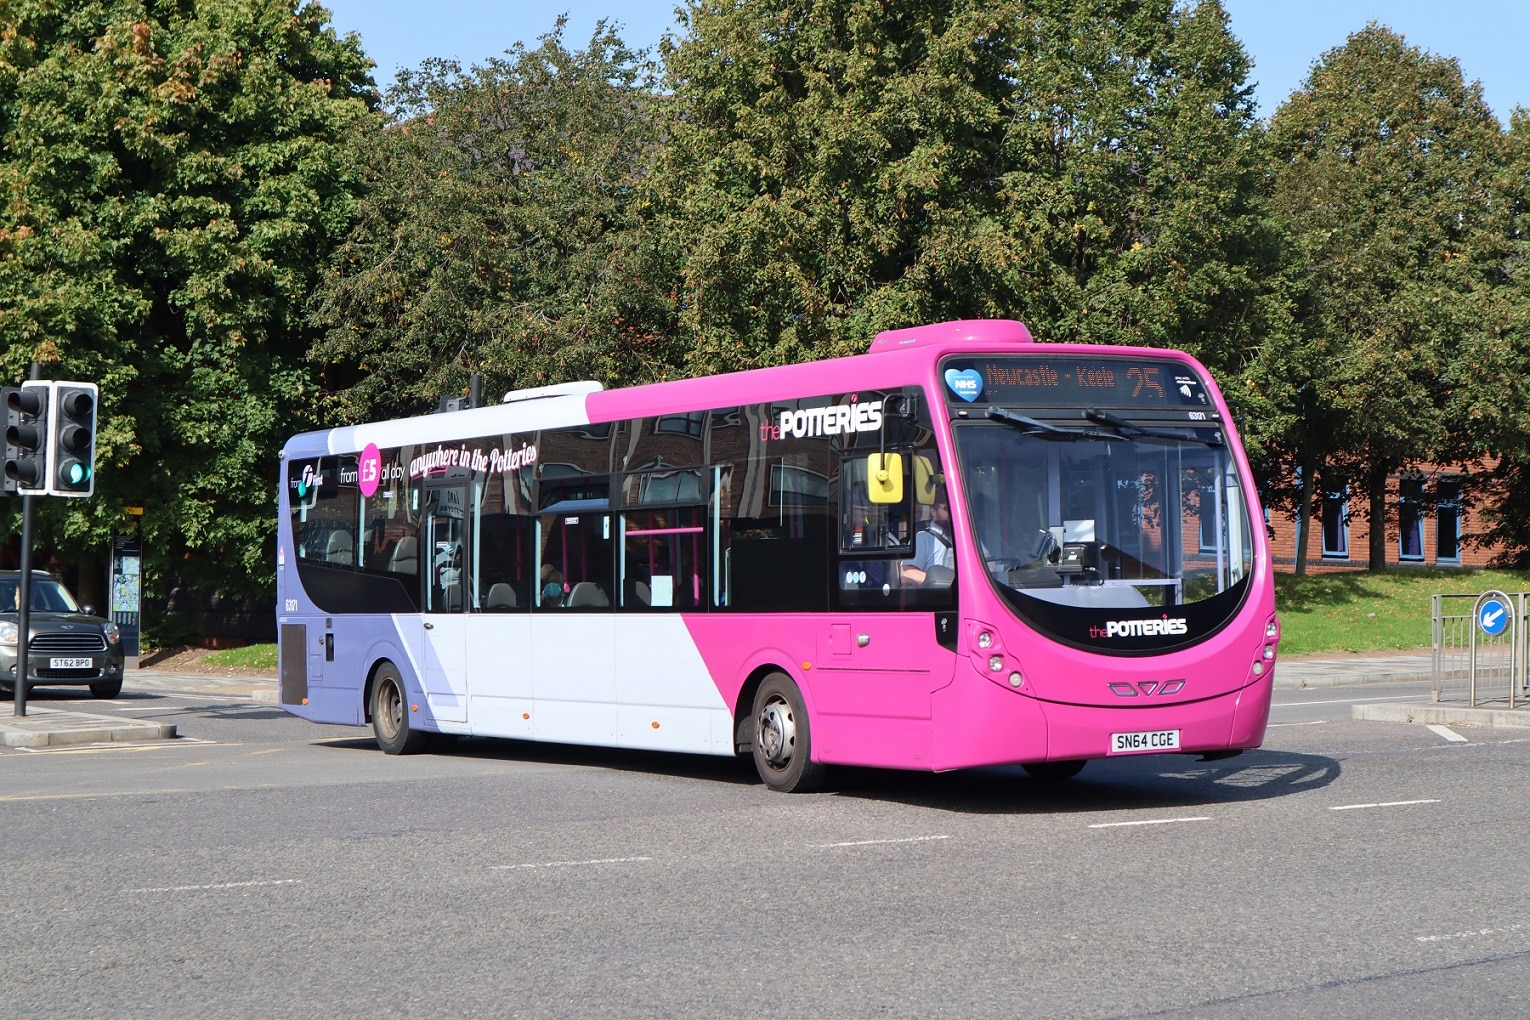 Bus Service Improvement Plan work underway